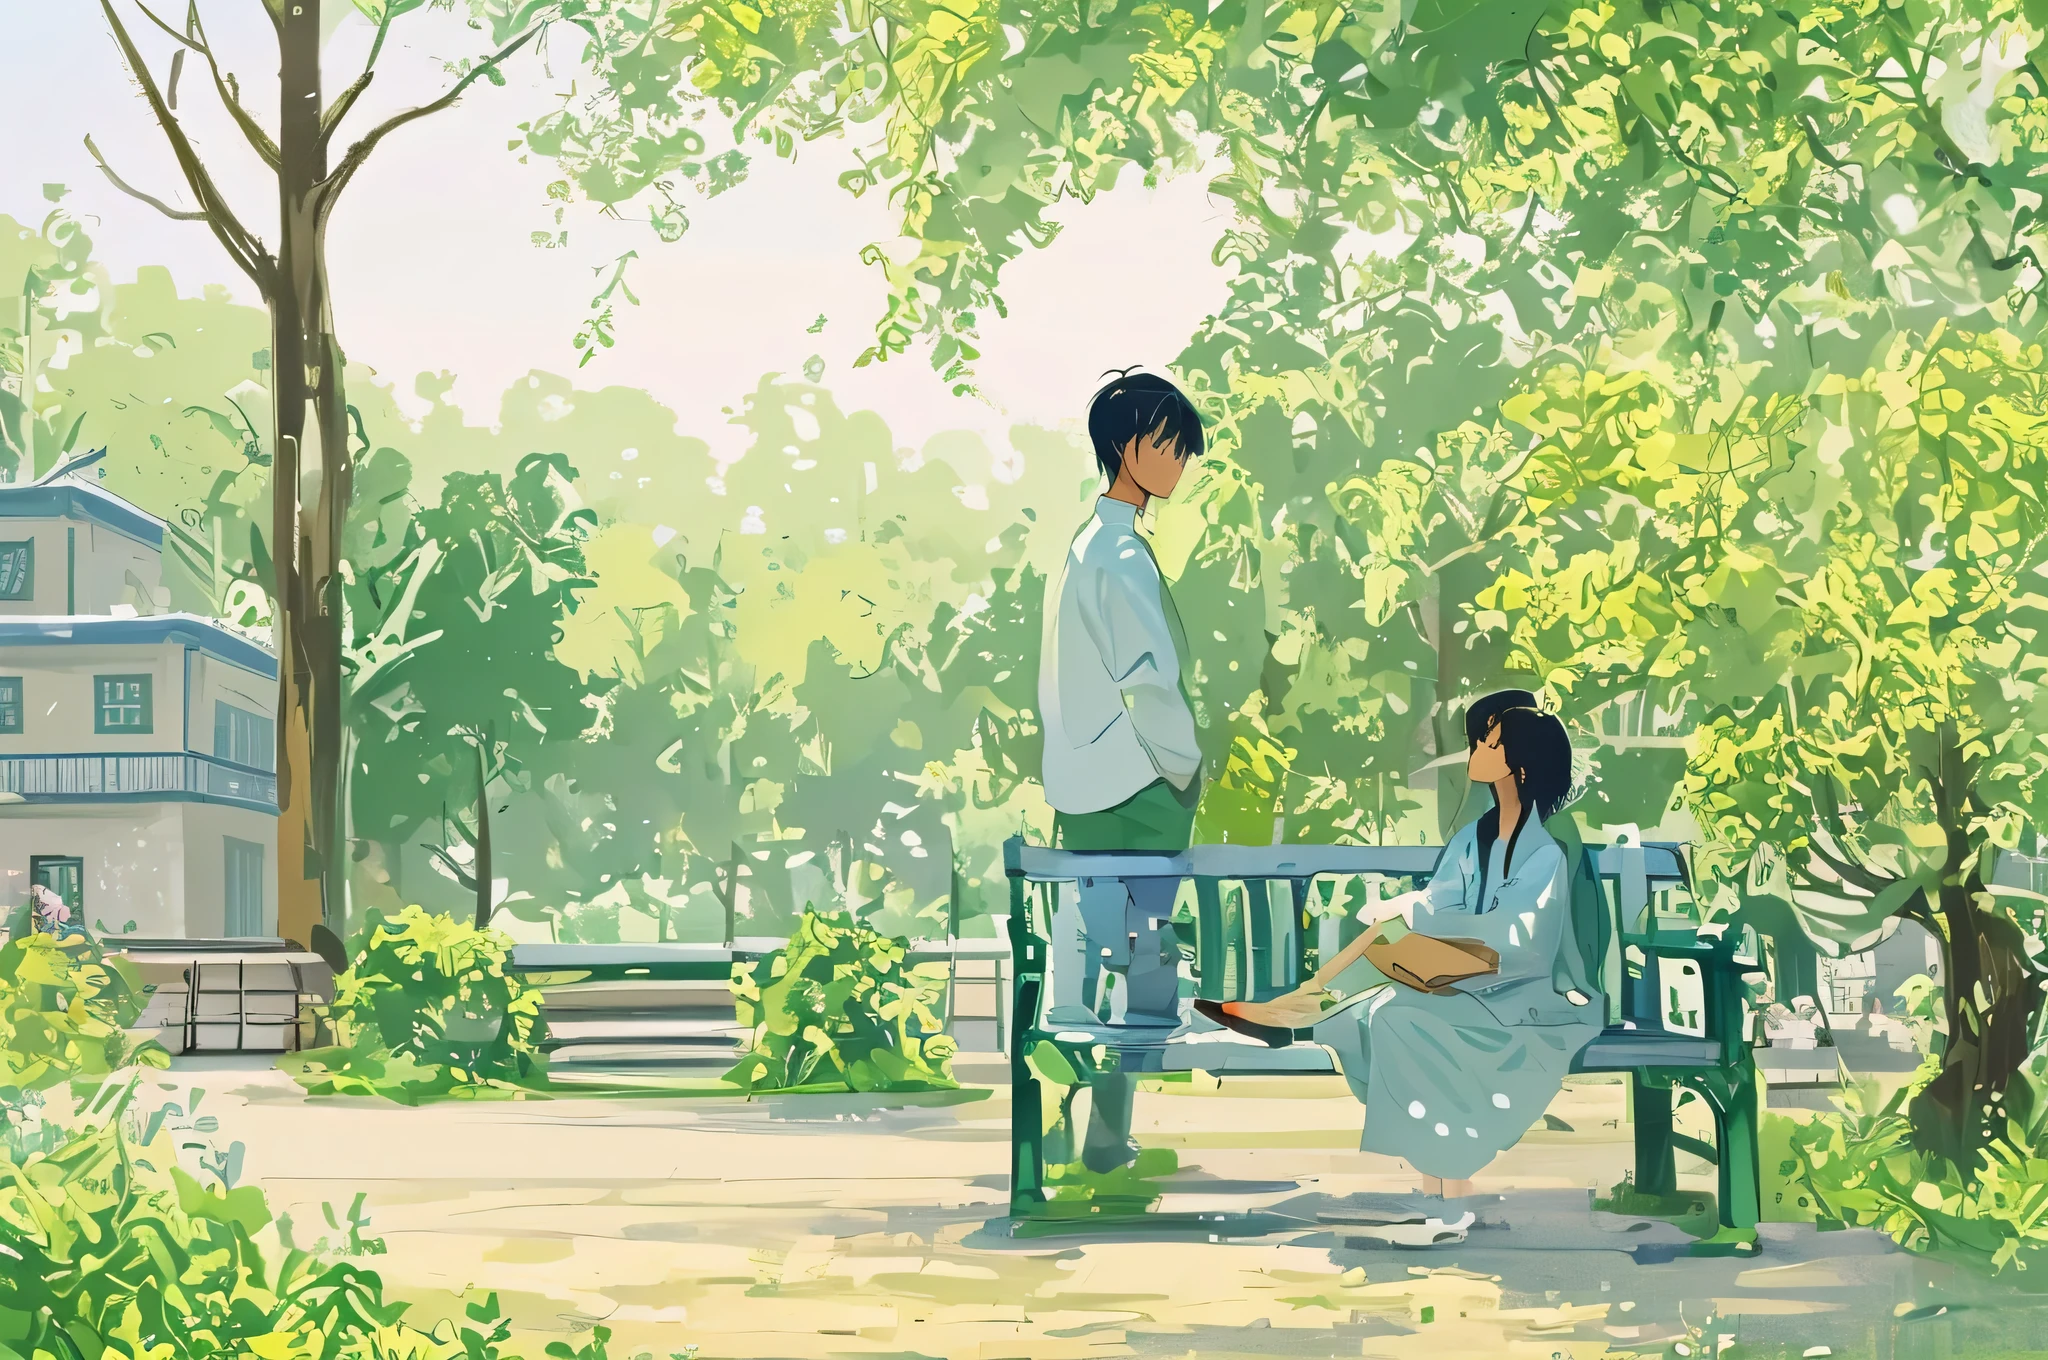 anime scene of a couple 벚꽃핀 벤치에 앉아 공원에서, 아름다운 애니메이션 장면, 공원 벤치에 앉아, sakimichan and makoto shinkai, 애니메이션 아름다운 평화 장면, 아름다운 묘사, 벤치에 앉아, makoto shinkai style, 야나가와 노부사다, 공원에서, 정원에 앉아, 벤치에 앉아